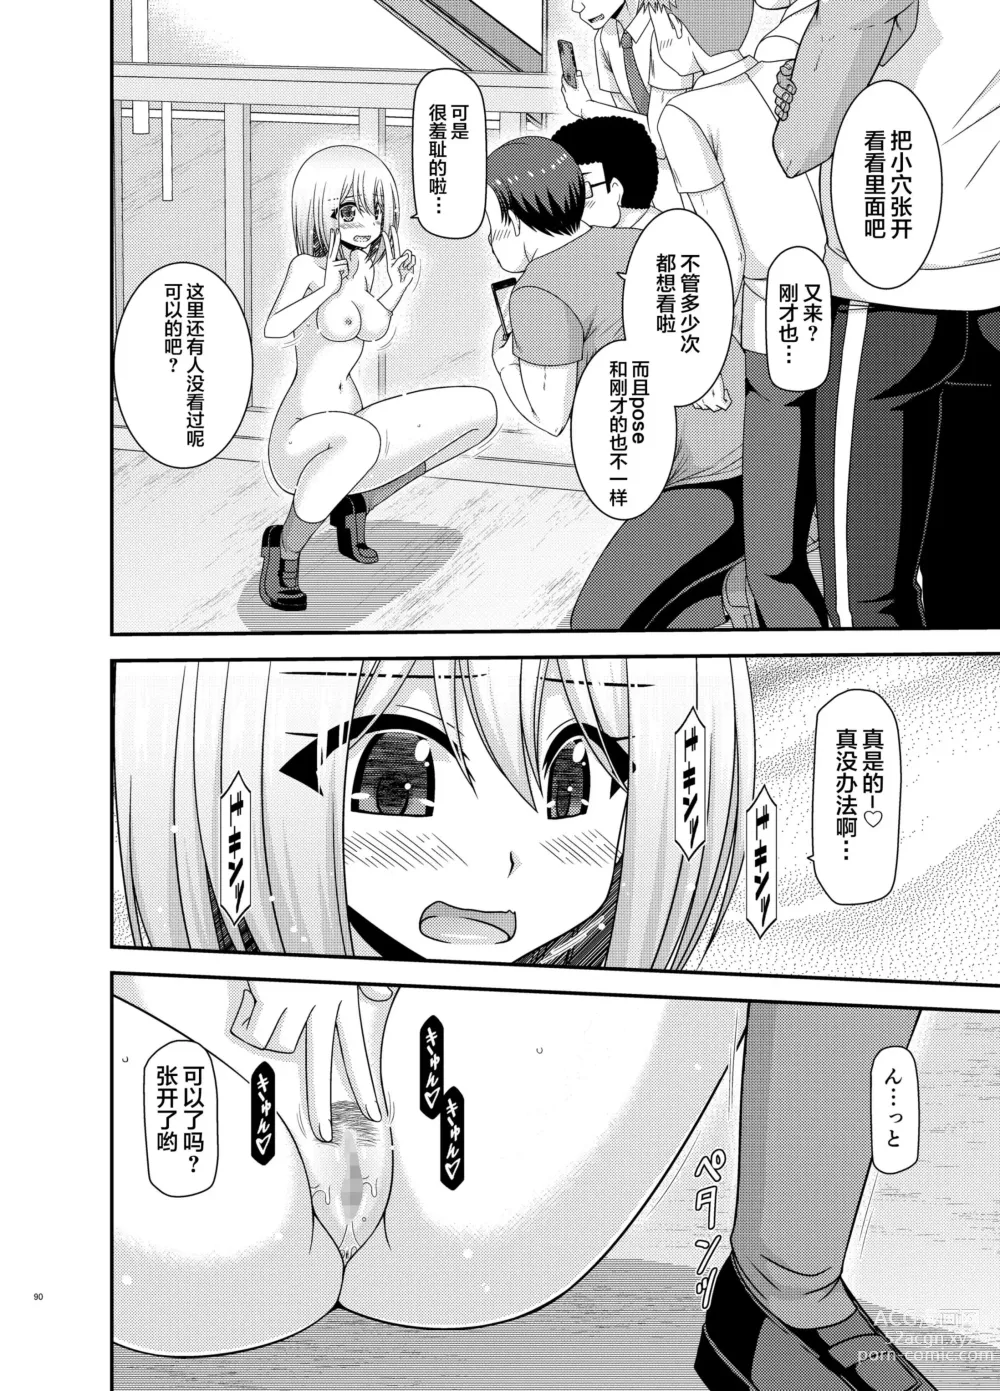 Page 87 of manga Nozokare Roshutsu Shoujo